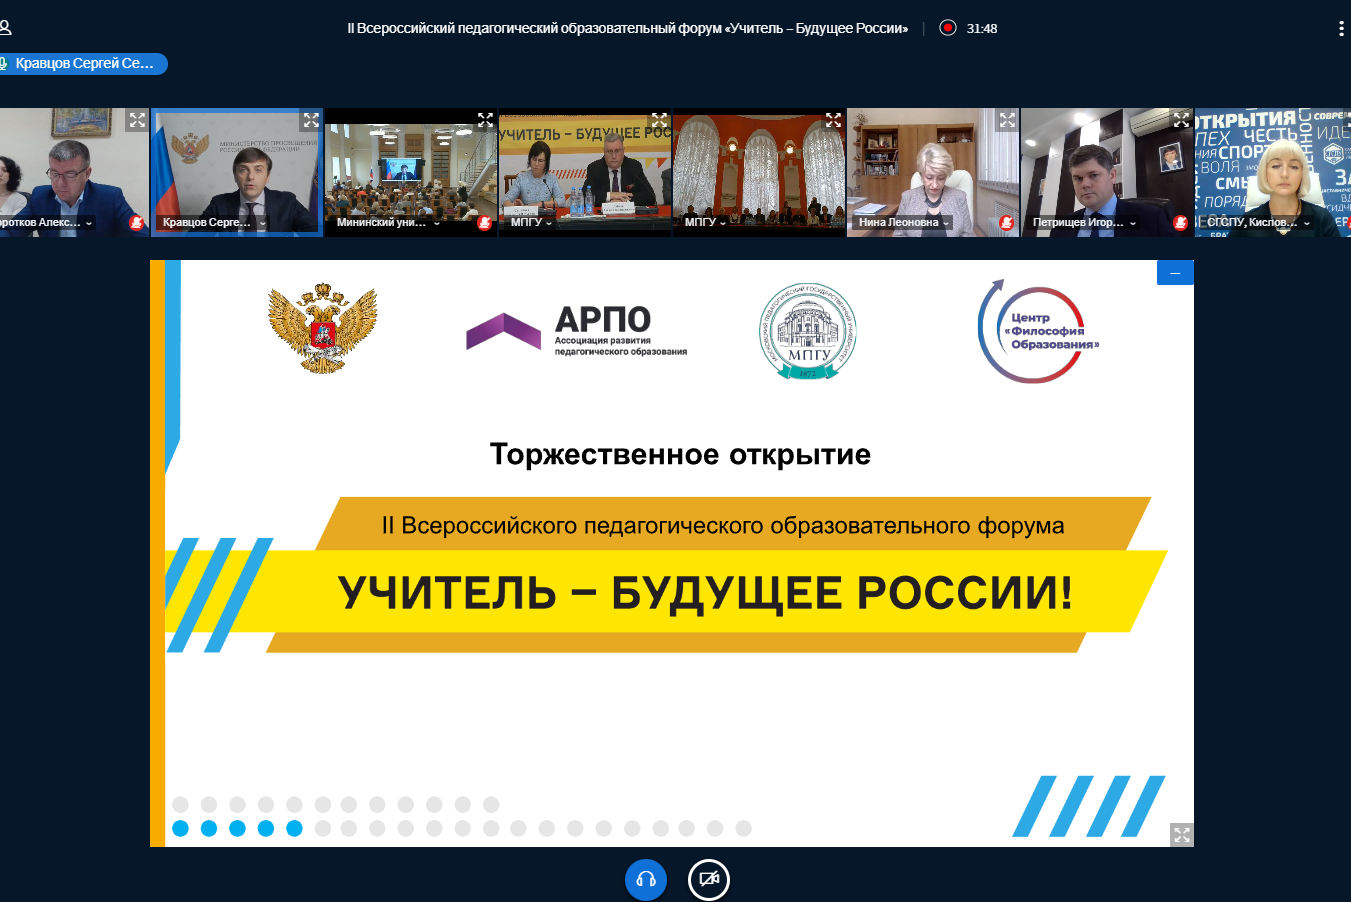 Опыт команды УрГПУ представлен на II Всероссийском педагогическом образовательном форуме